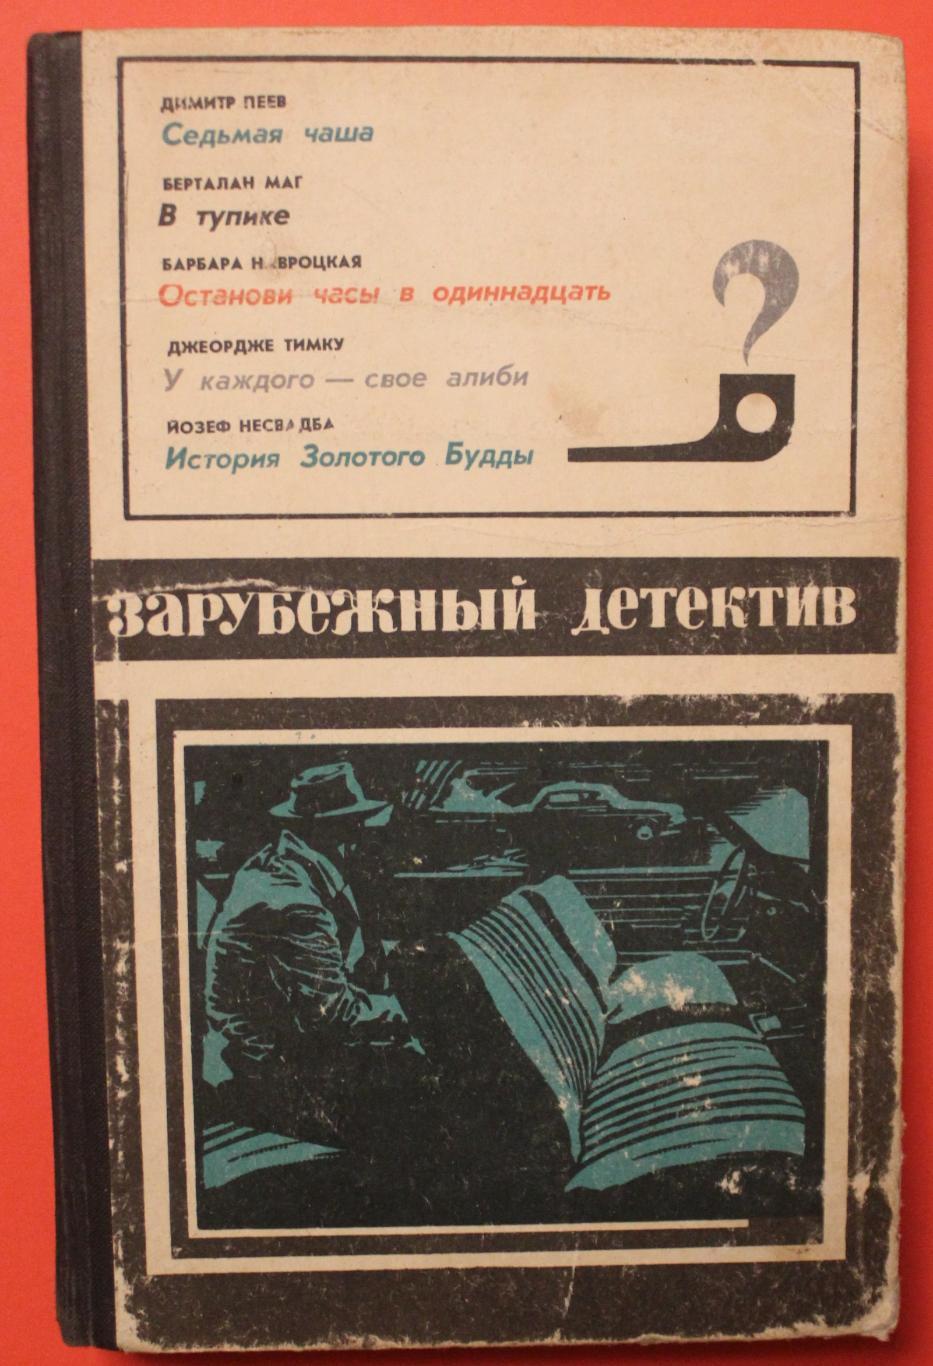 Зарубежный детектив изд. Молодая гвардия, 1976